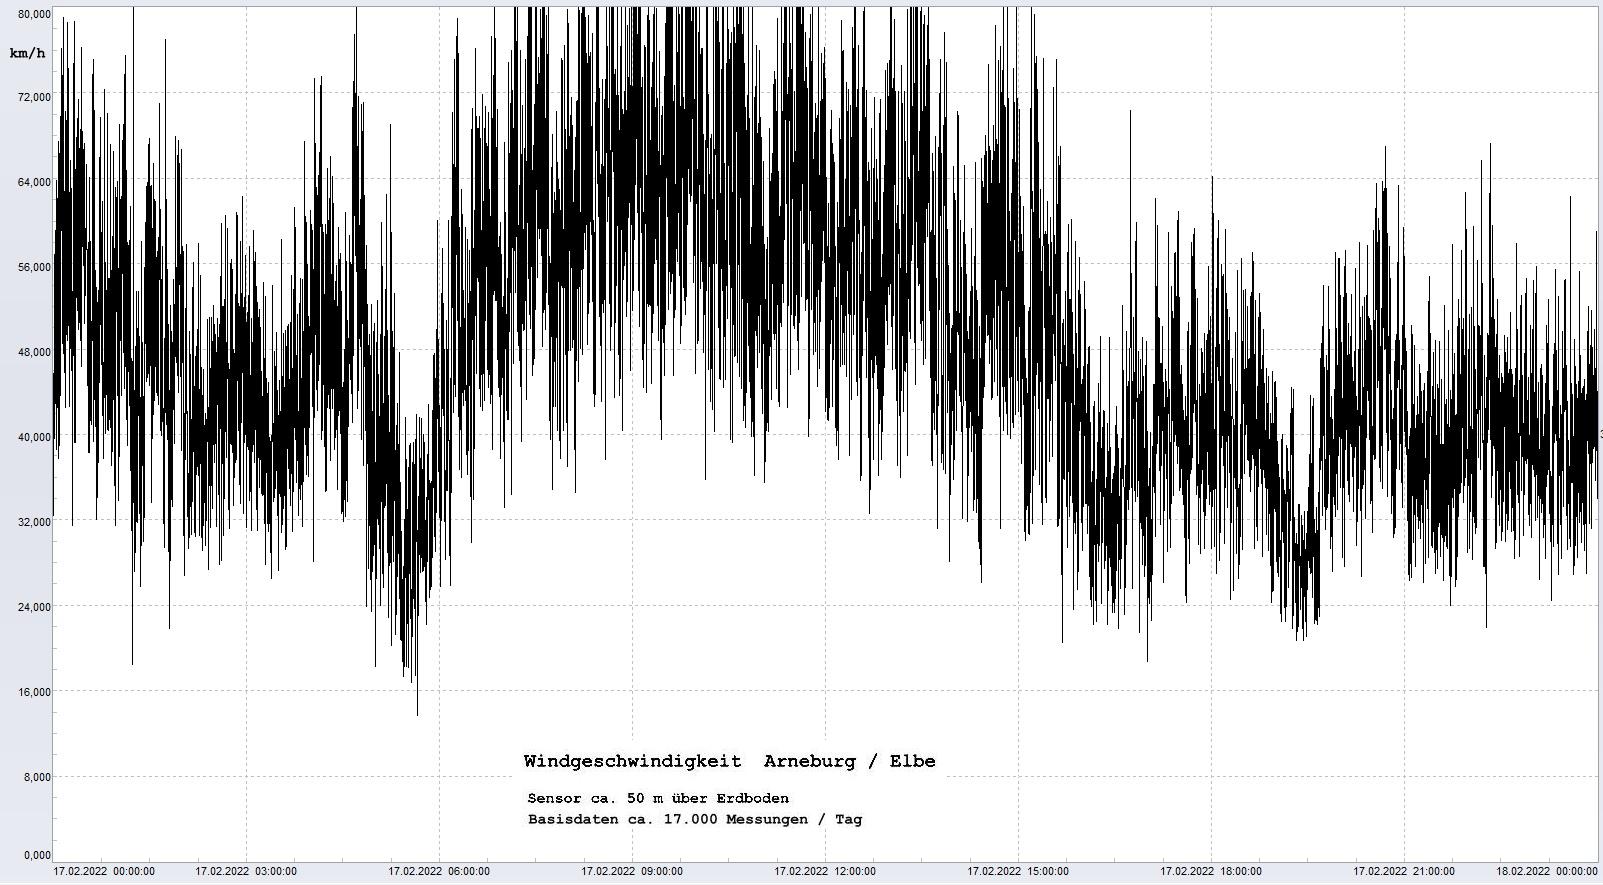 Arneburg Tages-Diagramm Winddaten, 17.02.2022
  Diagramm, Sensor auf Gebäude, ca. 50 m über Erdboden, Basis: 5s-Aufzeichnung